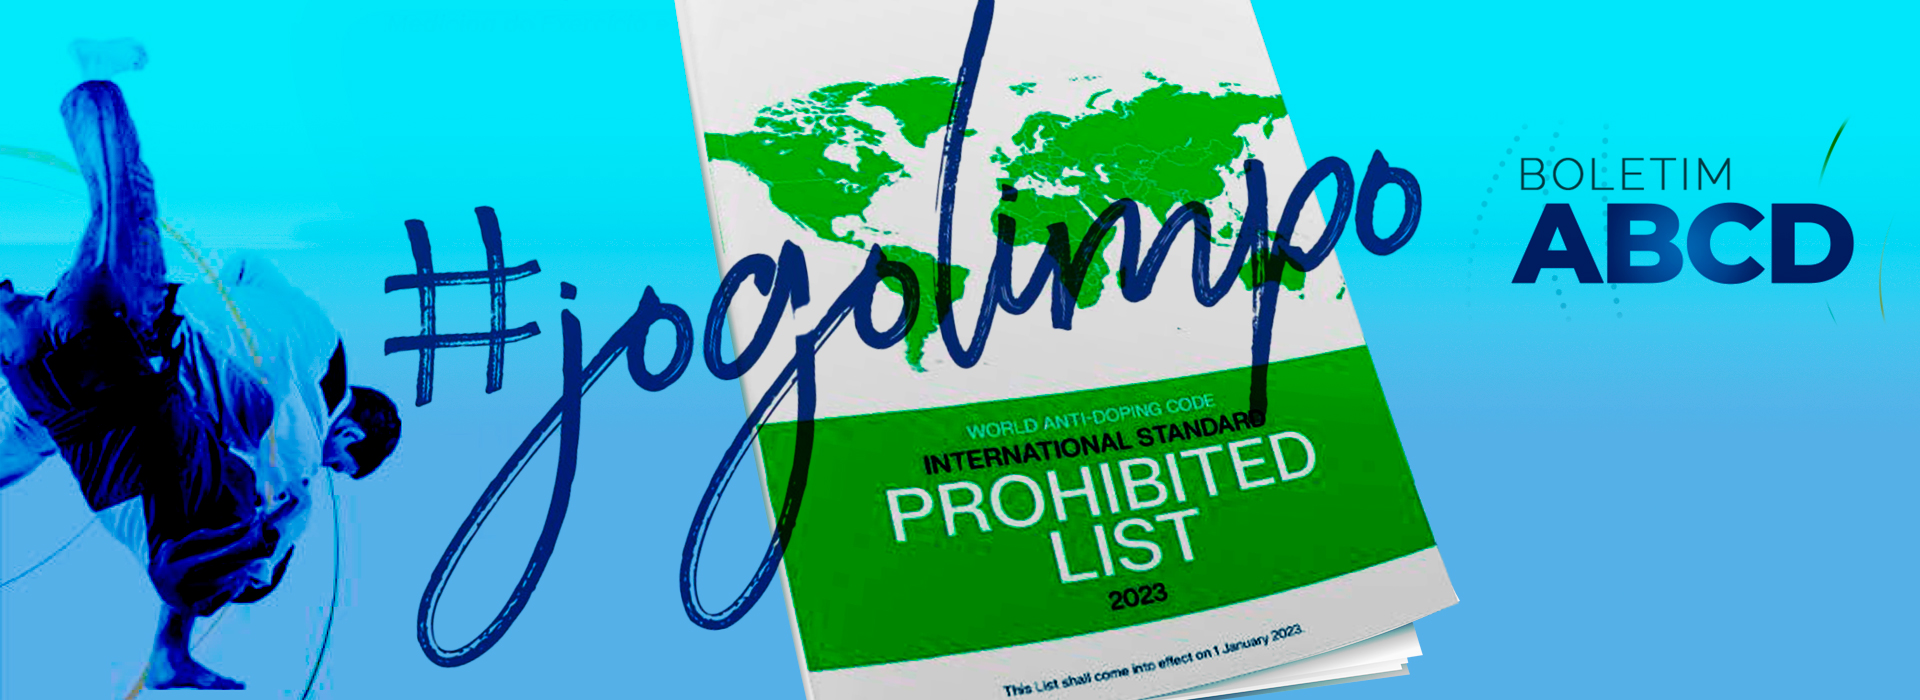 Jogo Limpo: Comitê Executivo da Agência Mundial Antidopagem aprova Lista Proibida 2023